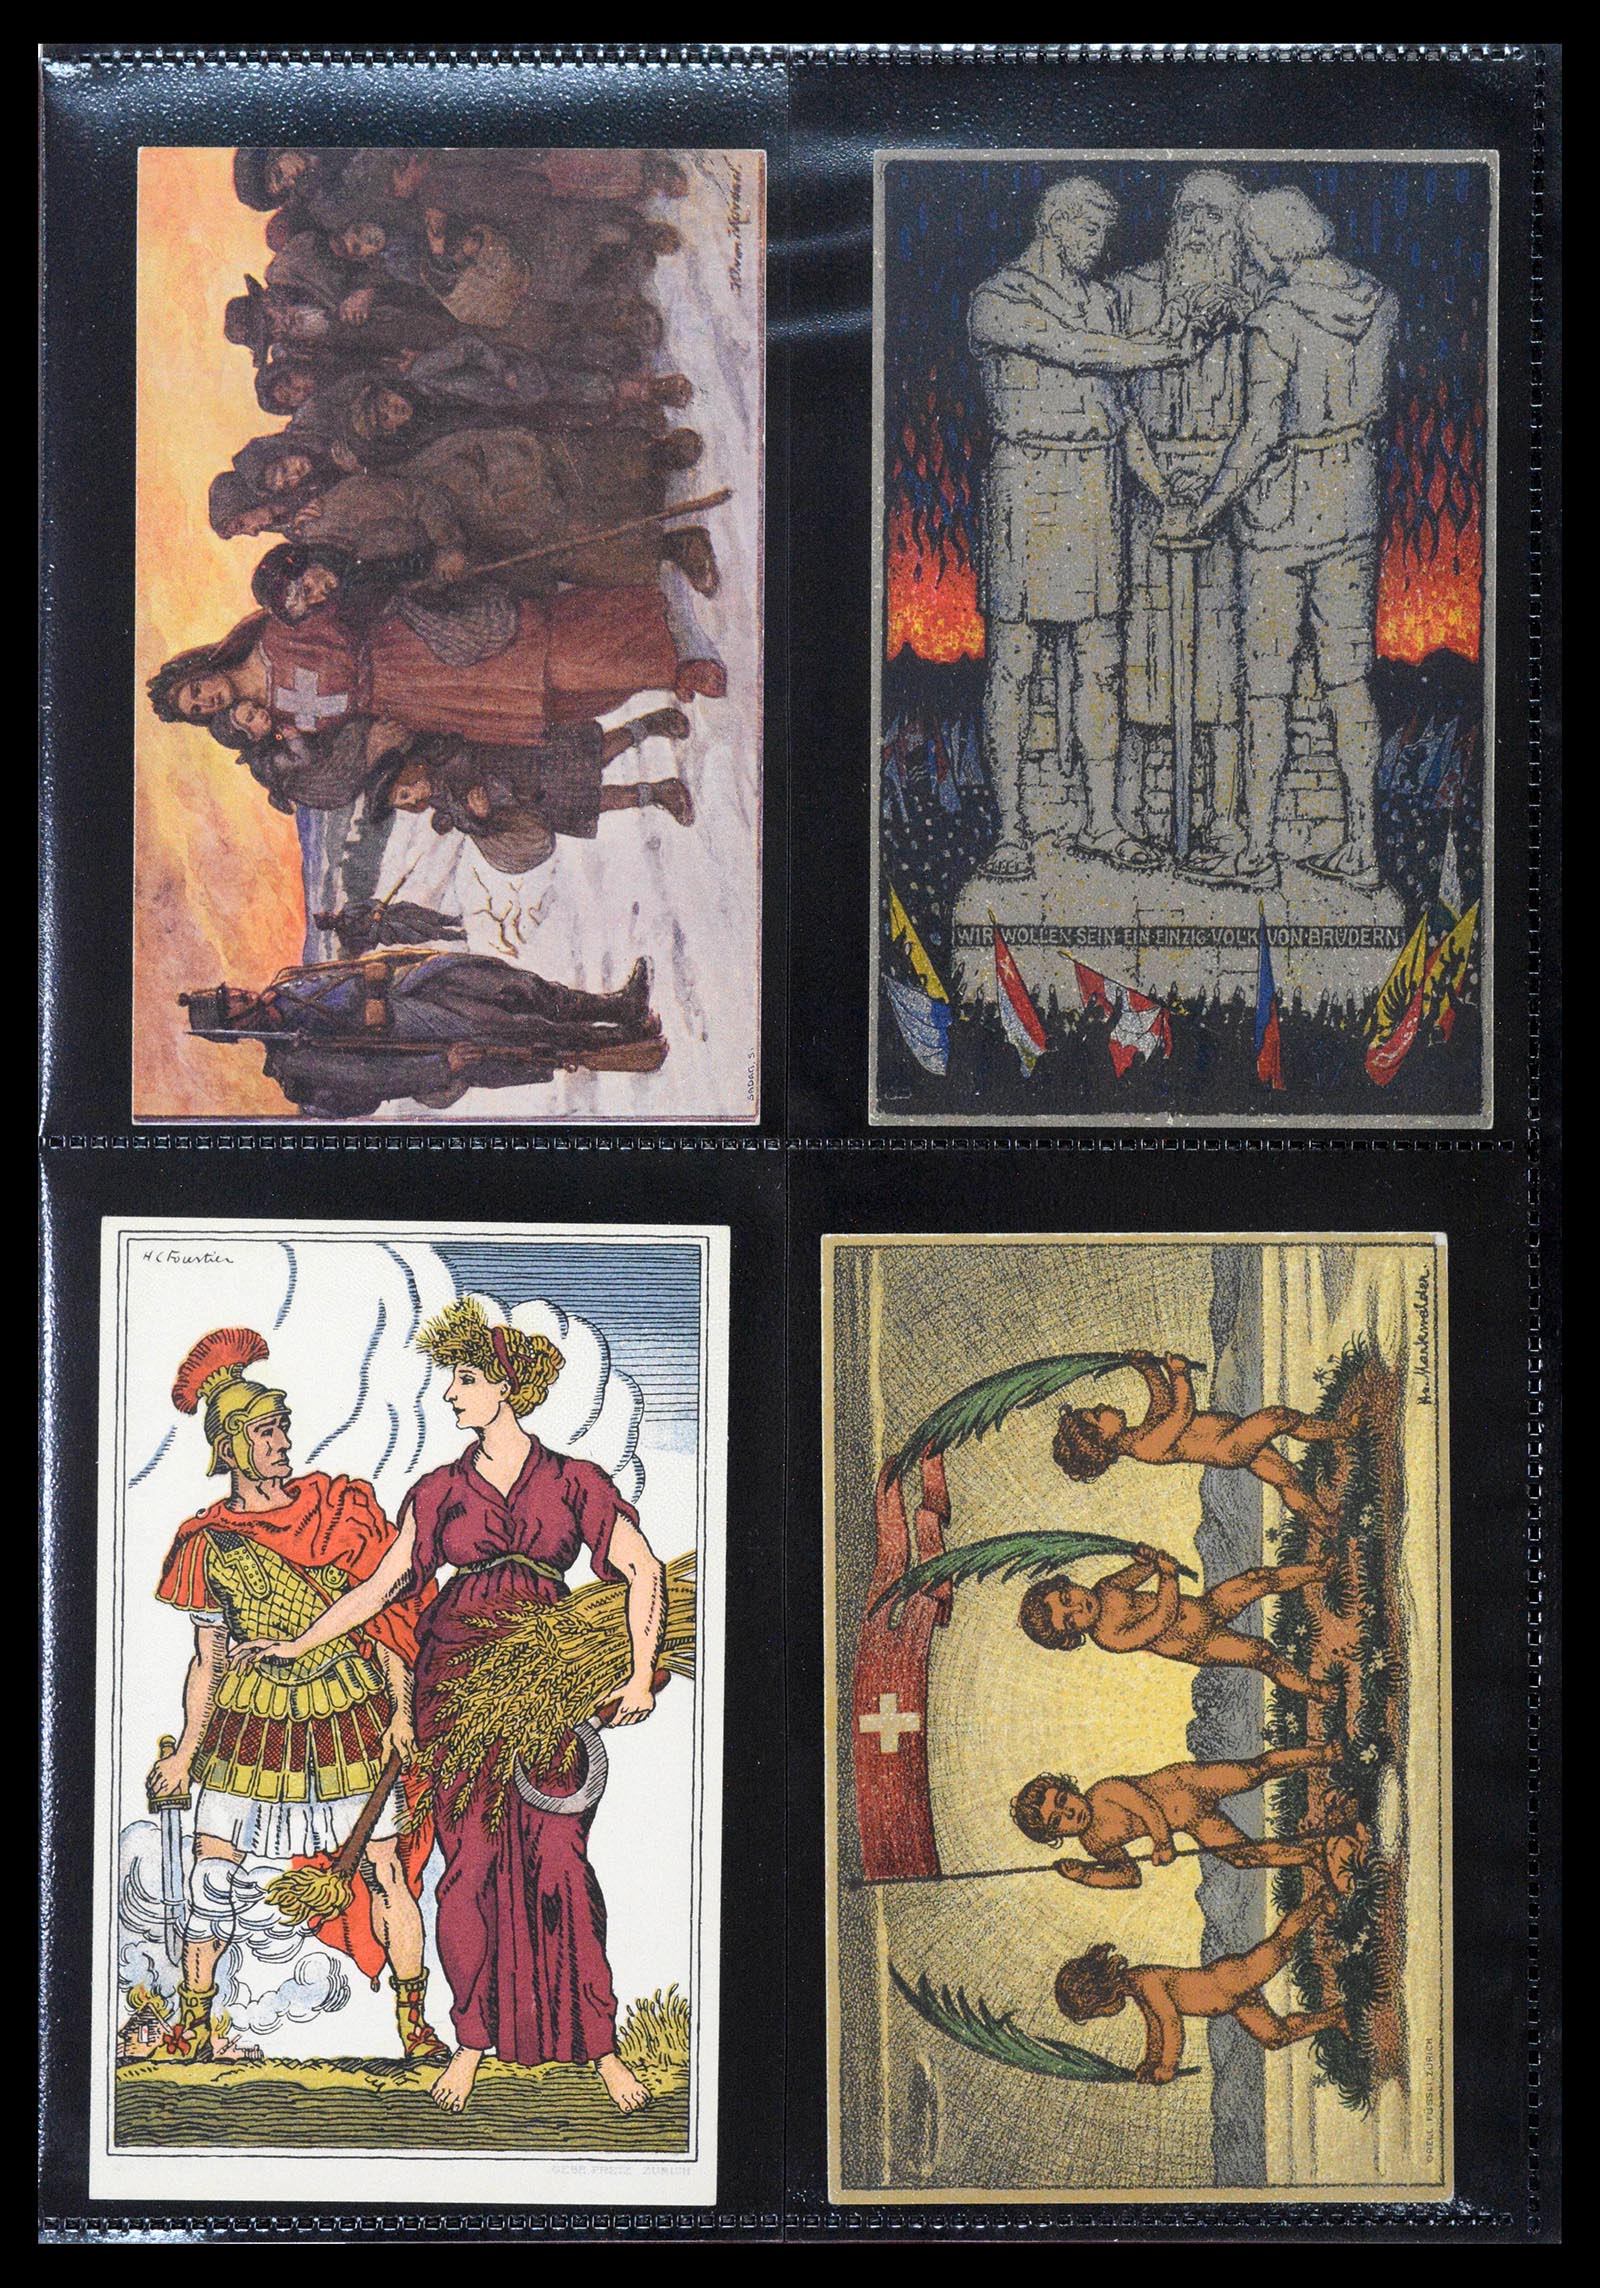 39433 0004 - Stamp collection 39433 Switzerland Bundesfeier cards 1910-1937.